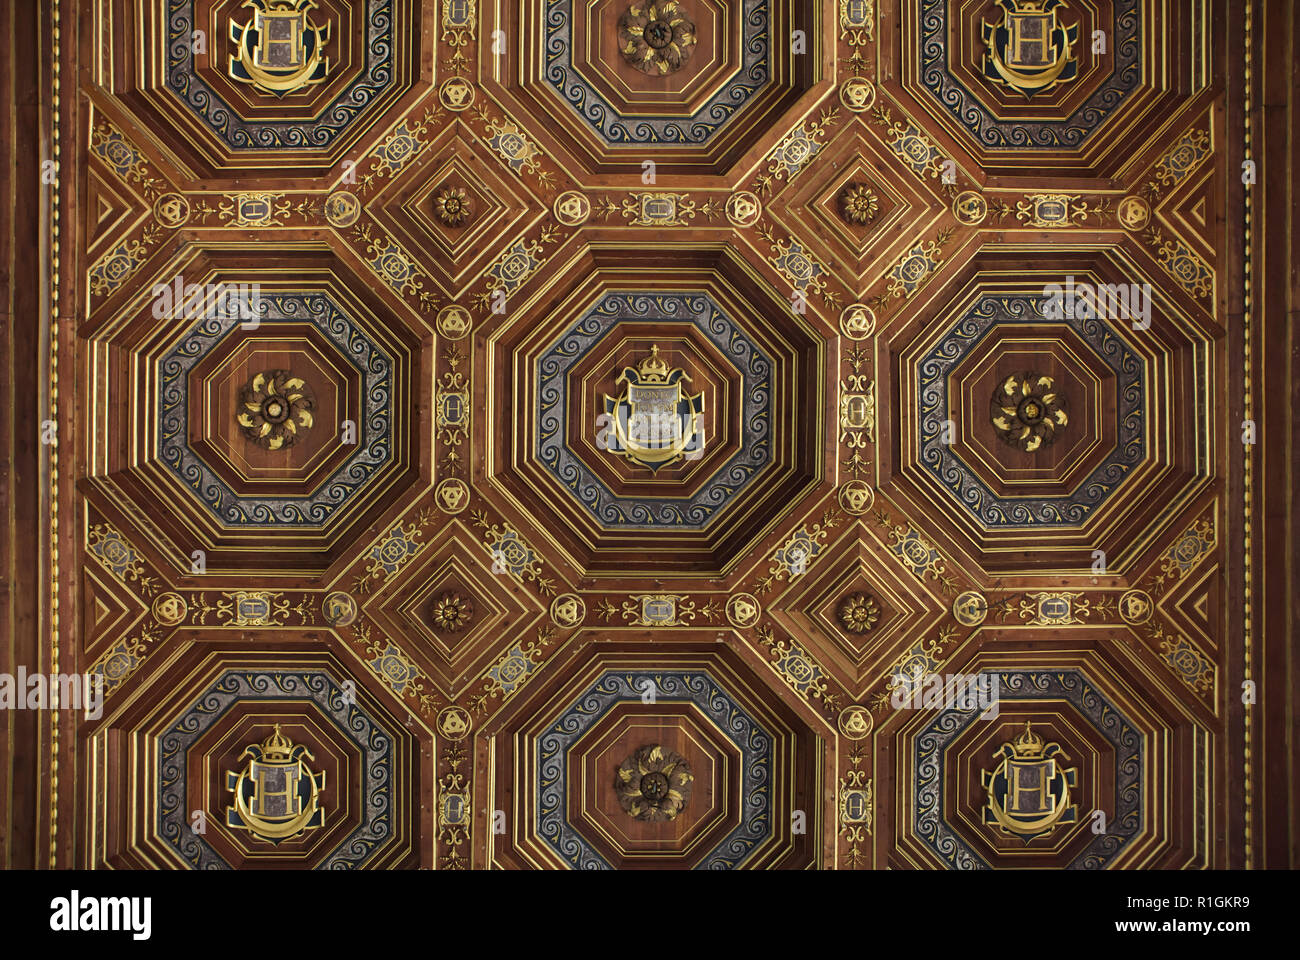 Plafond à caissons de la Renaissance dans la salle de bal dans le palais de  Fontainebleau (château de Fontainebleau) près de Paris, France. La  décoration de la salle a commencé sous le